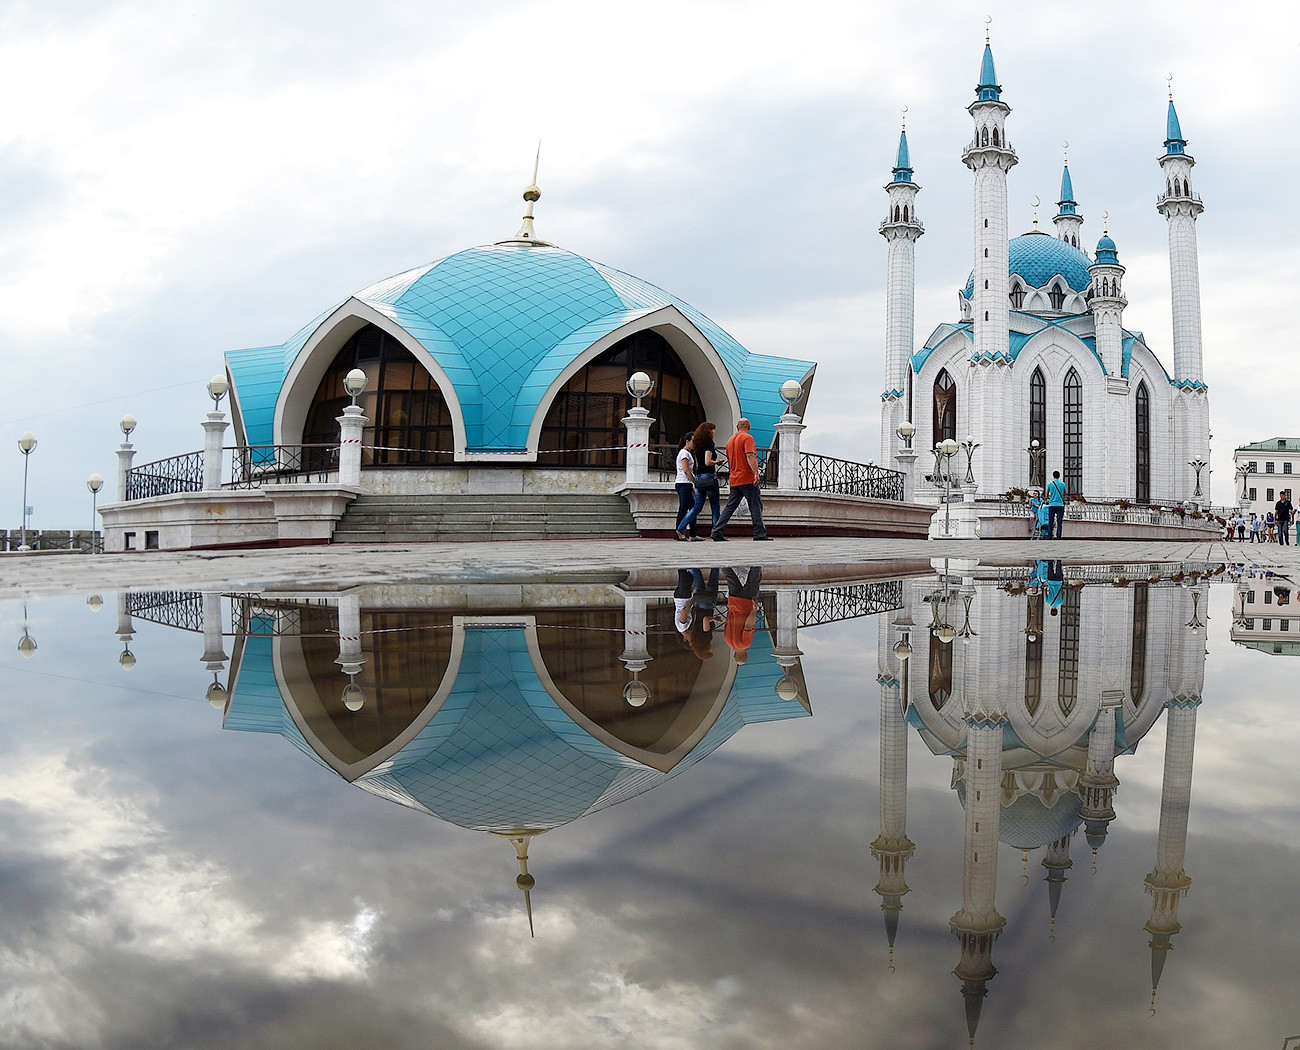 Refleksi Masjid Qol Sharif, Kazan. 